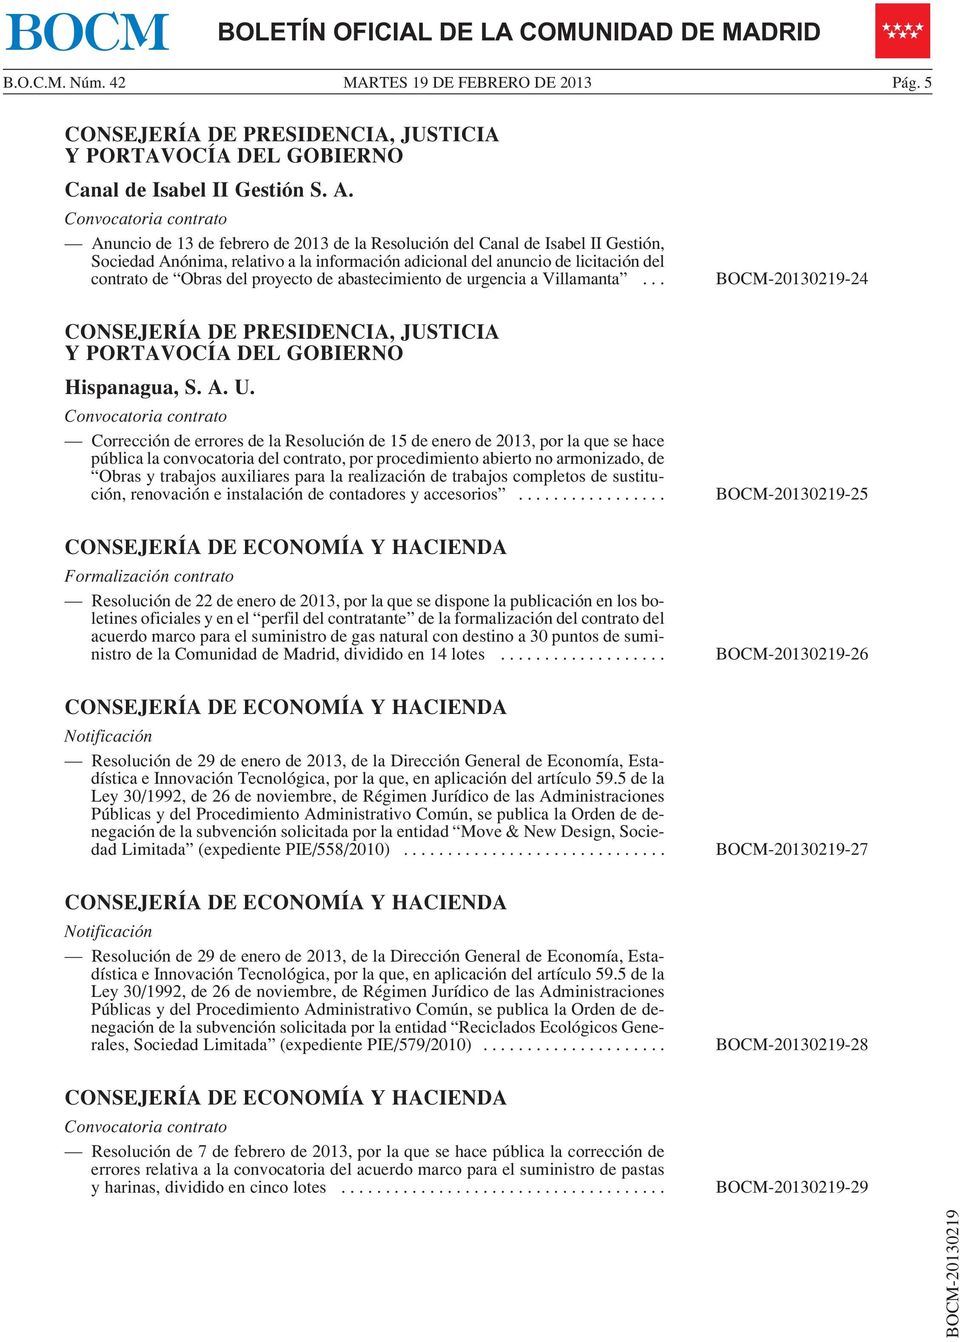 Corrección de errores de la Resolución de 15 de enero de 2013, por la que se hace pública la convocatoria del contrato, por procedimiento abierto no armonizado, de Obras y trabajos auxiliares para la